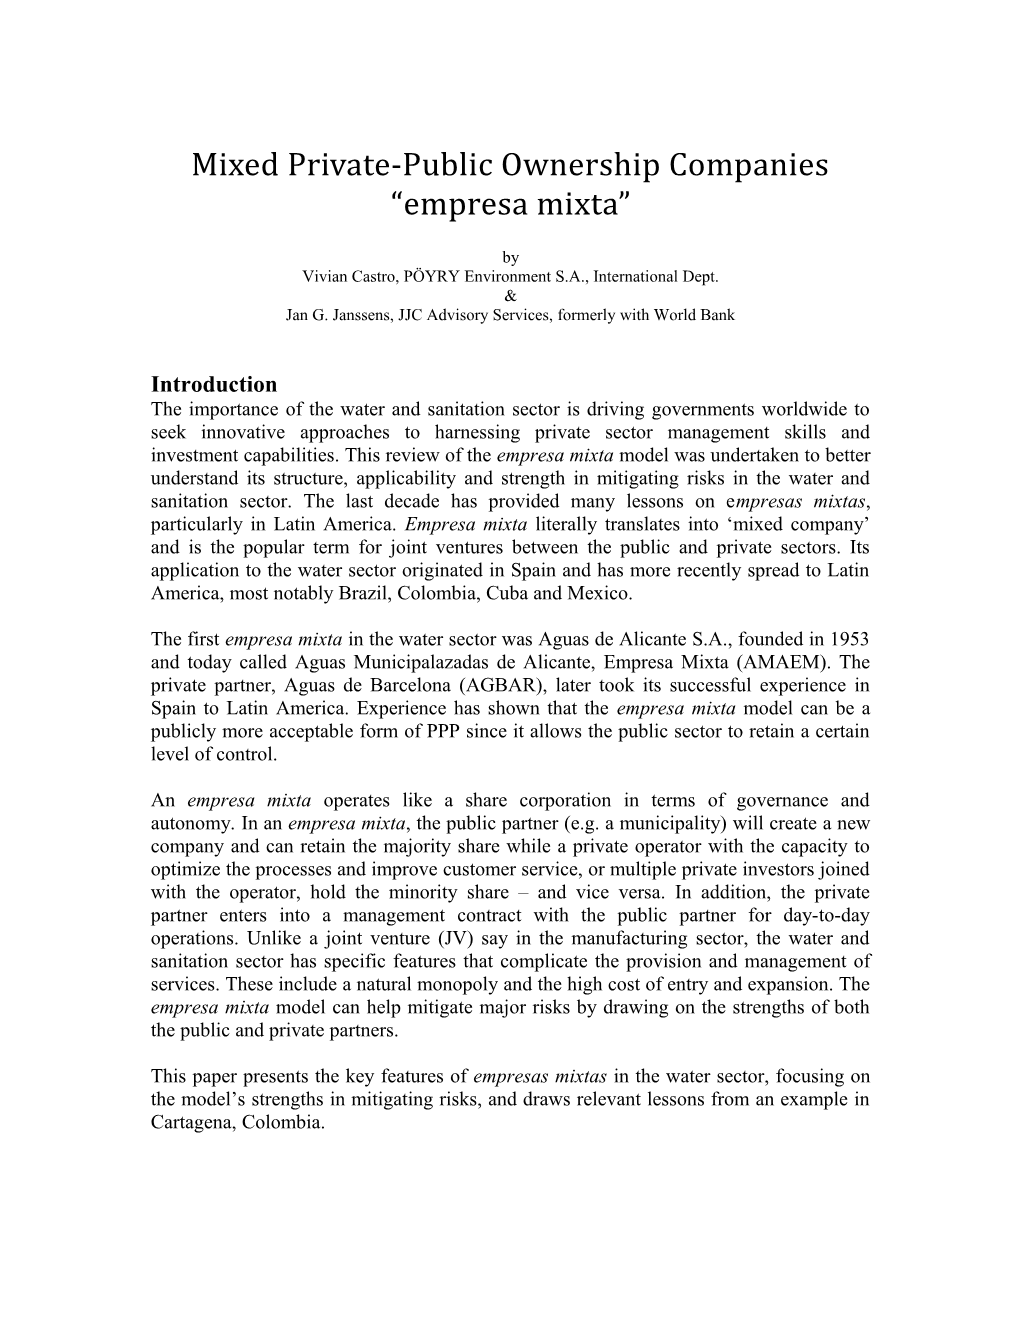 Mixed Private-Public Ownership Companies Empresa Mixta